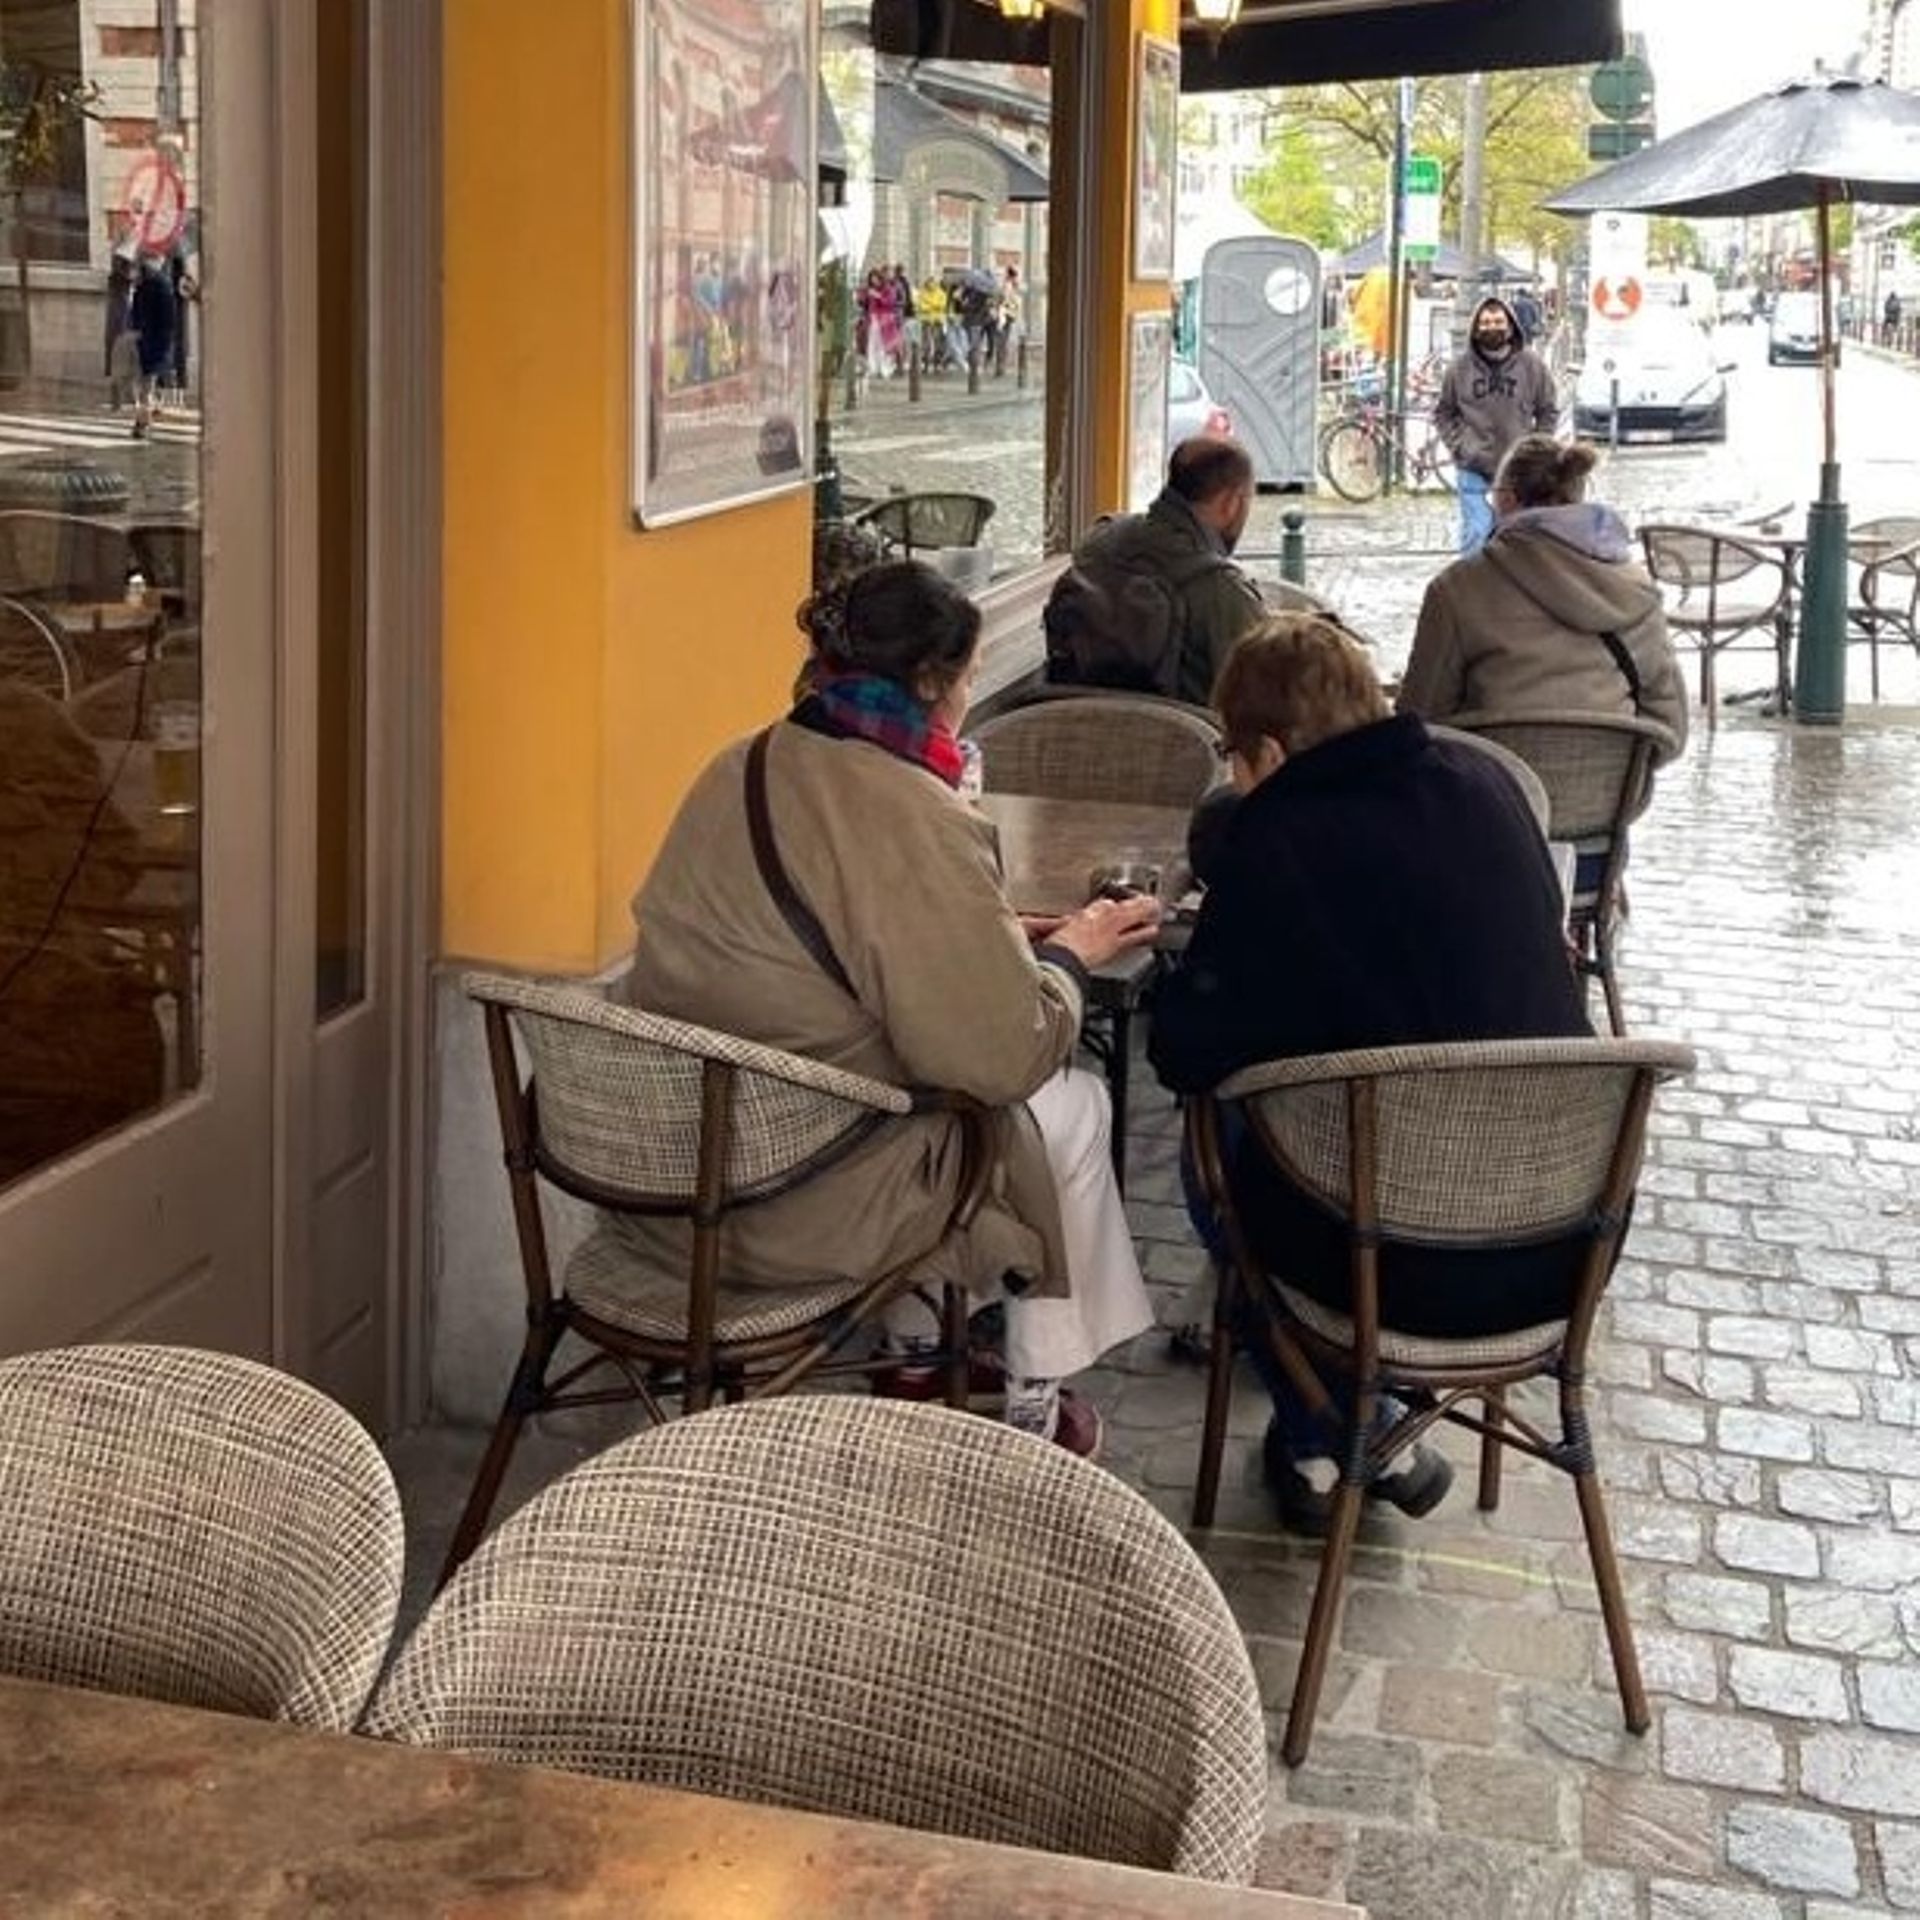 La place du Jeu de Balle, à Bruxelles, retrouve ses tables et chaises, ainsi que son célèbre marché aux puces